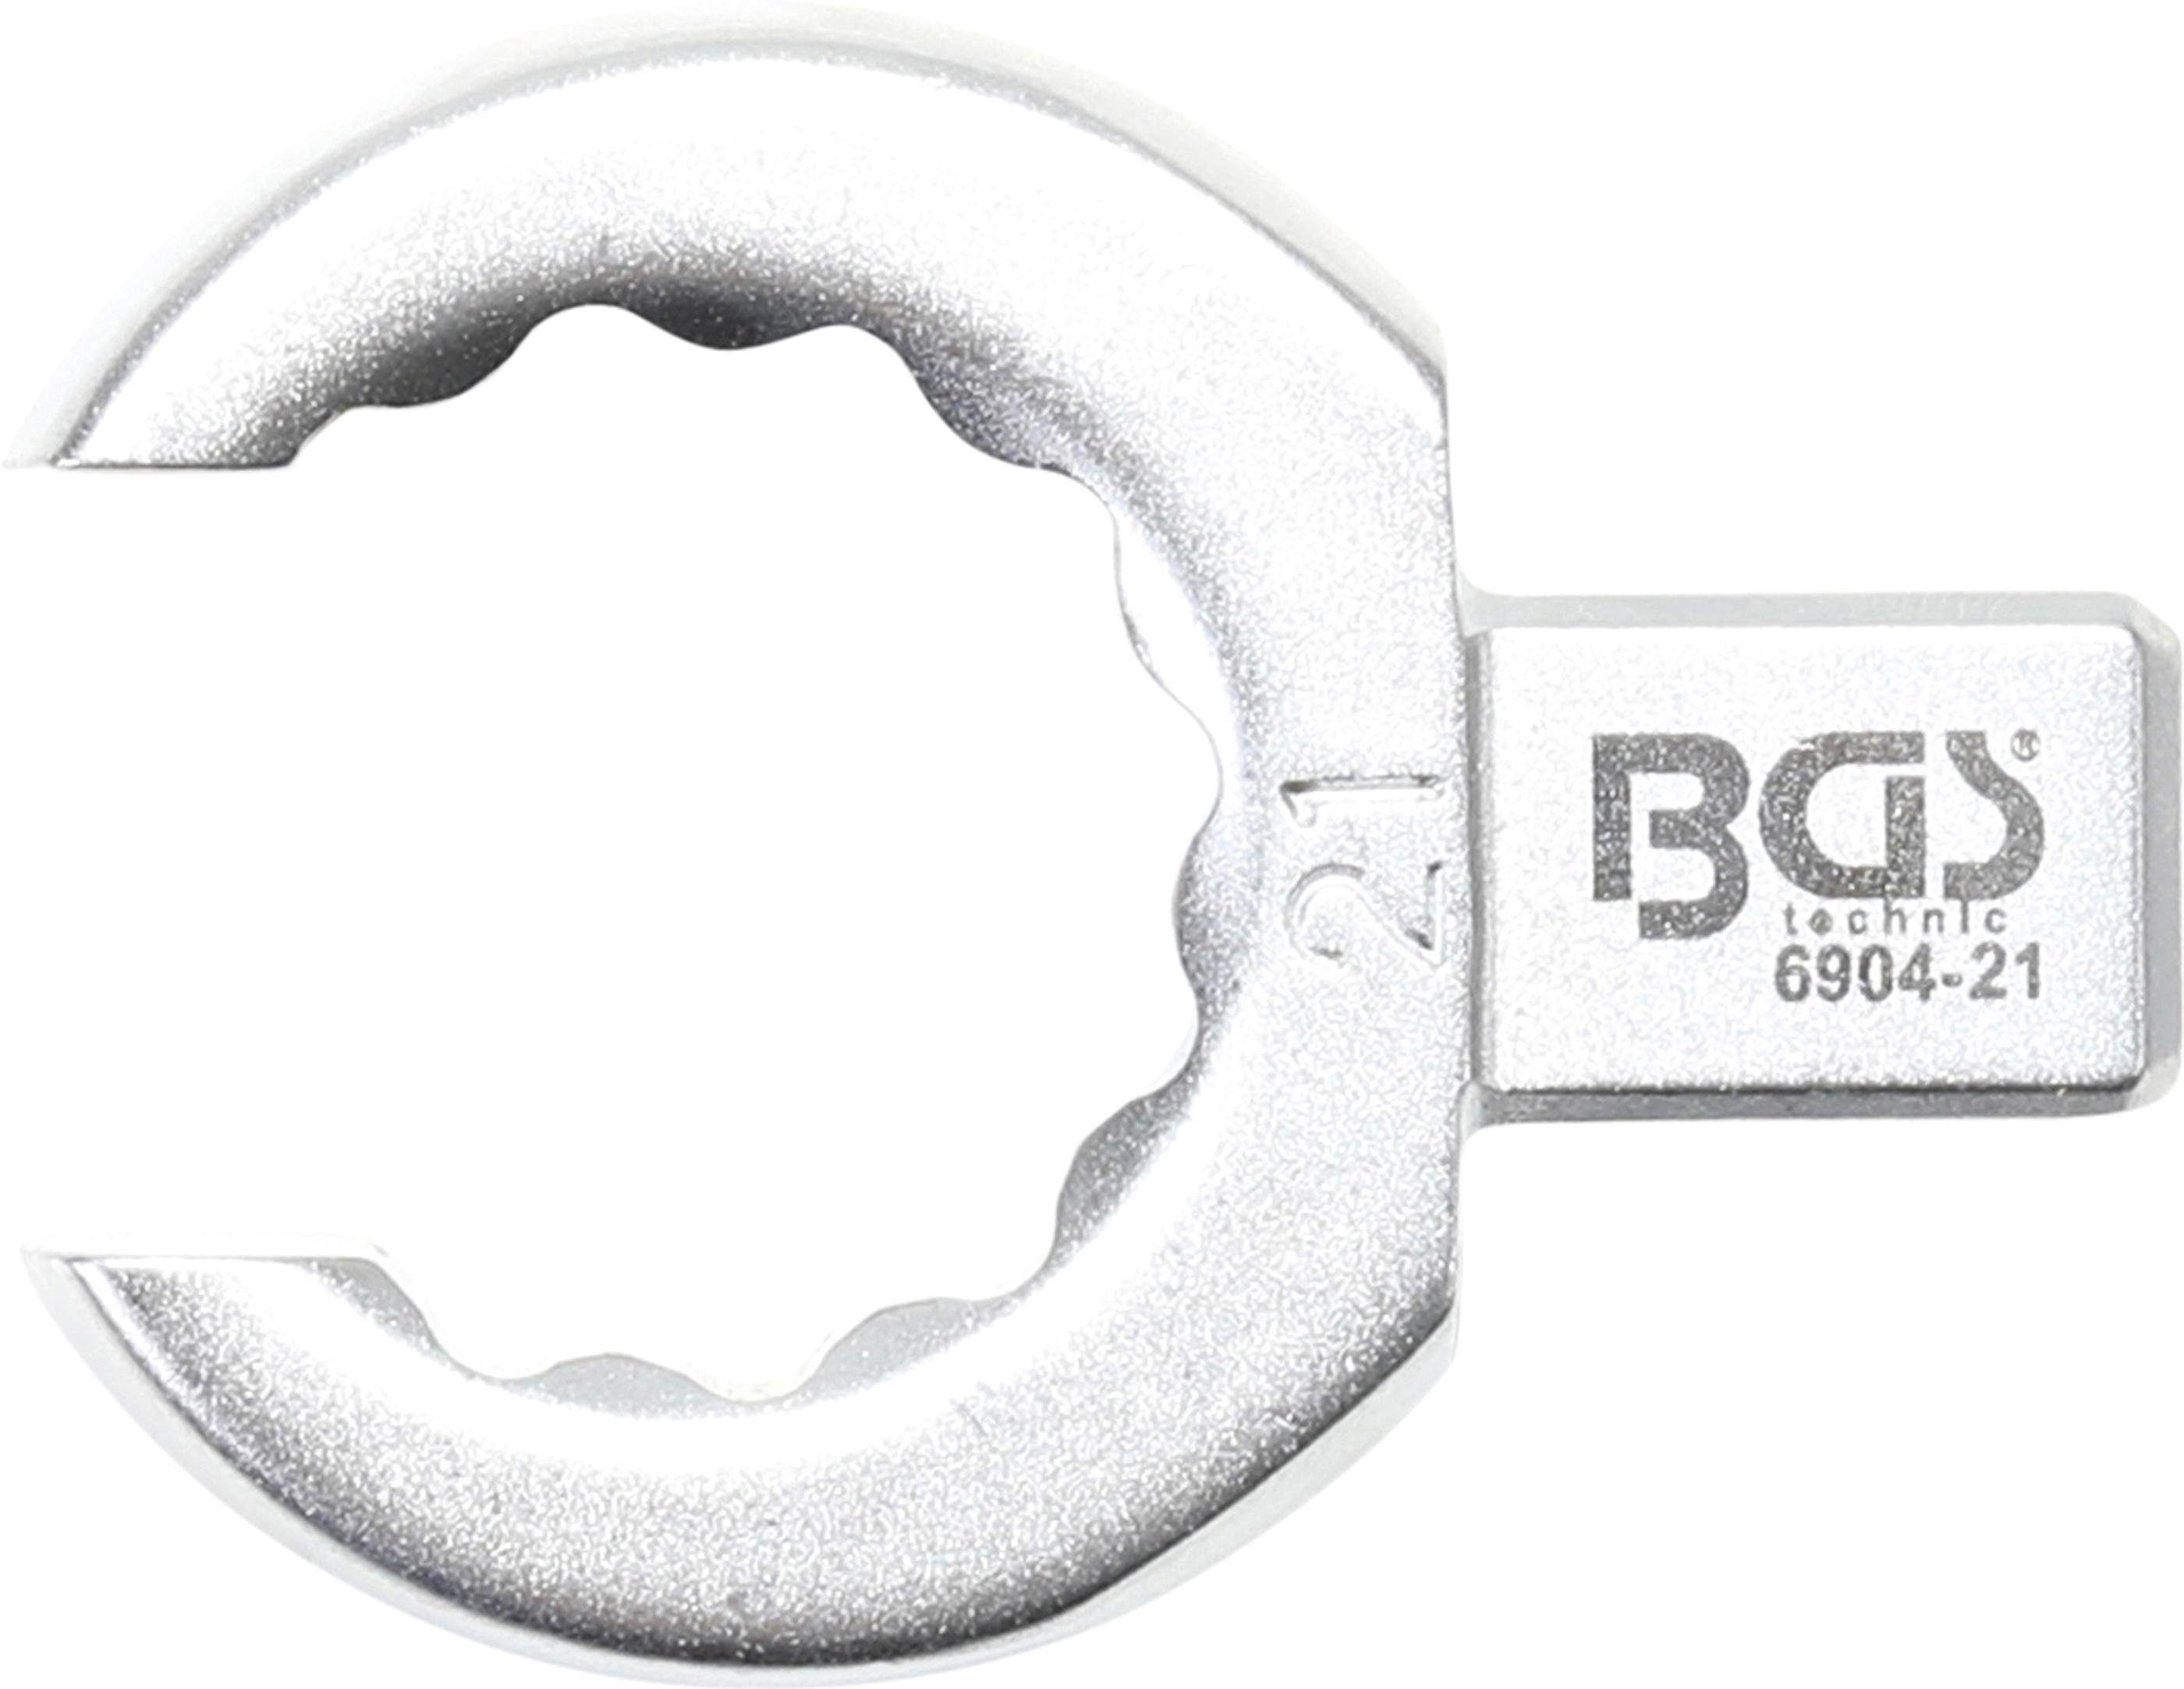 BGS technic Ausstechform Einsteck-Ringschlüssel, offen, 21 mm, Aufnahme 9 x 12 mm